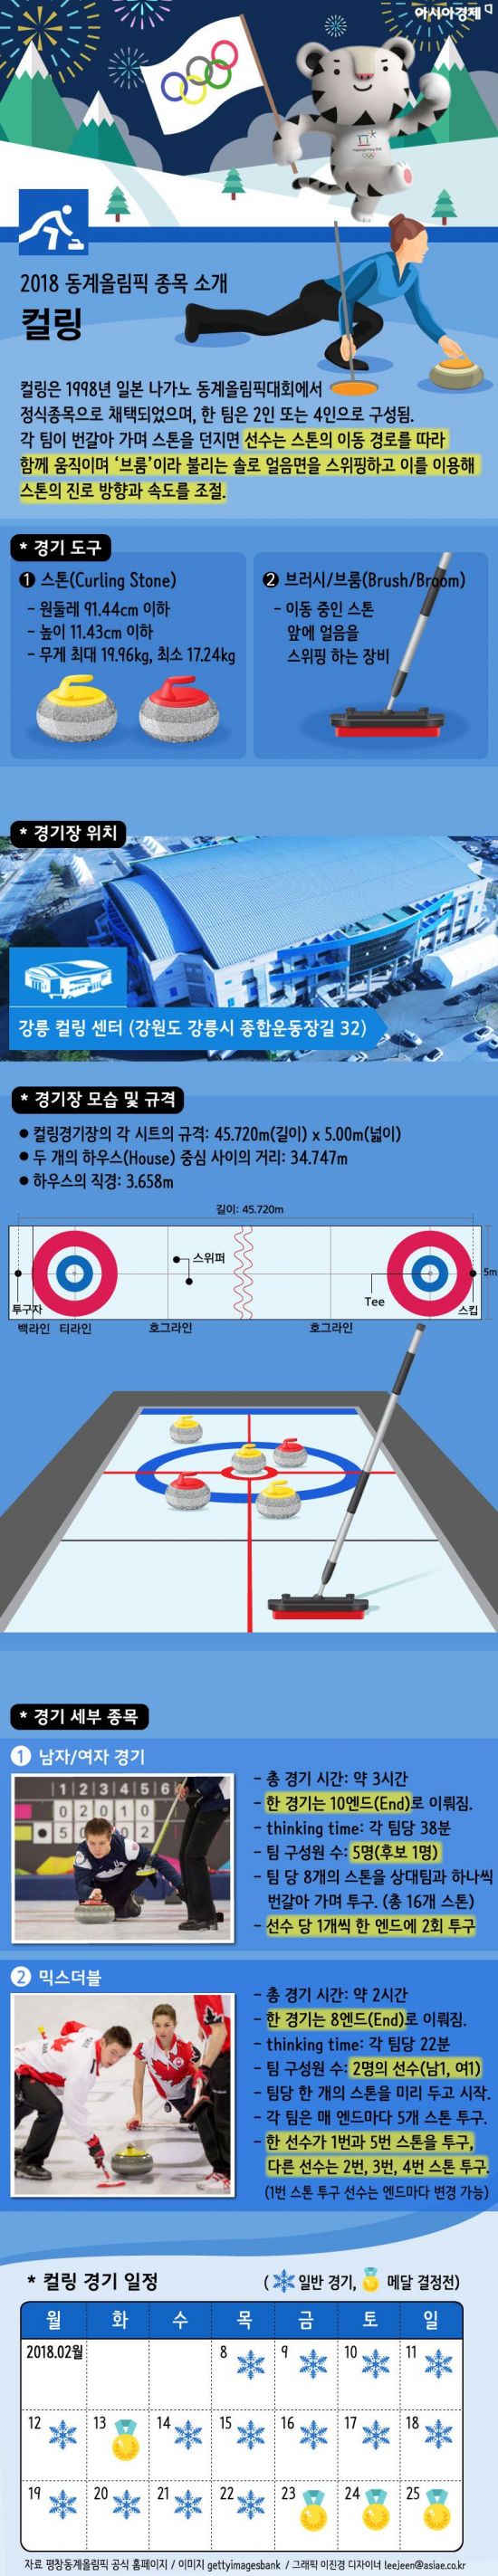 [인포그래픽]2018 평창 동계올림픽 종목소개-컬링